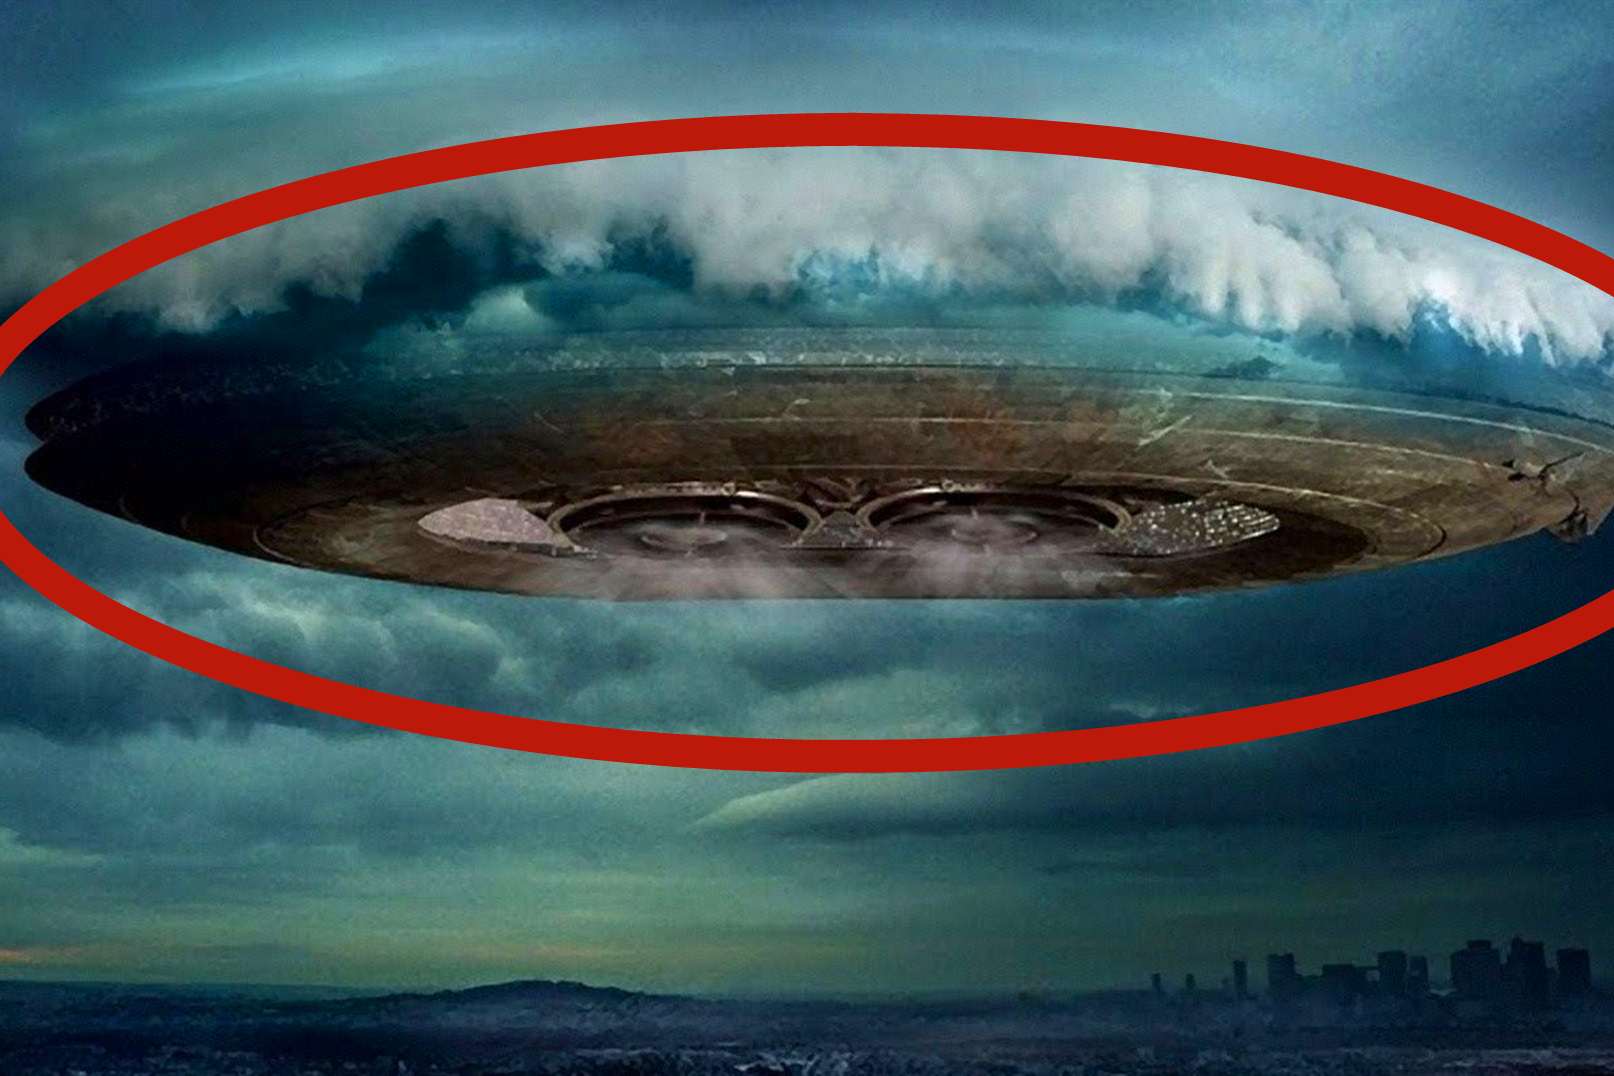 10个飞机上意外拍摄到的ufo画面,绝对不是特效,外星人真存在?